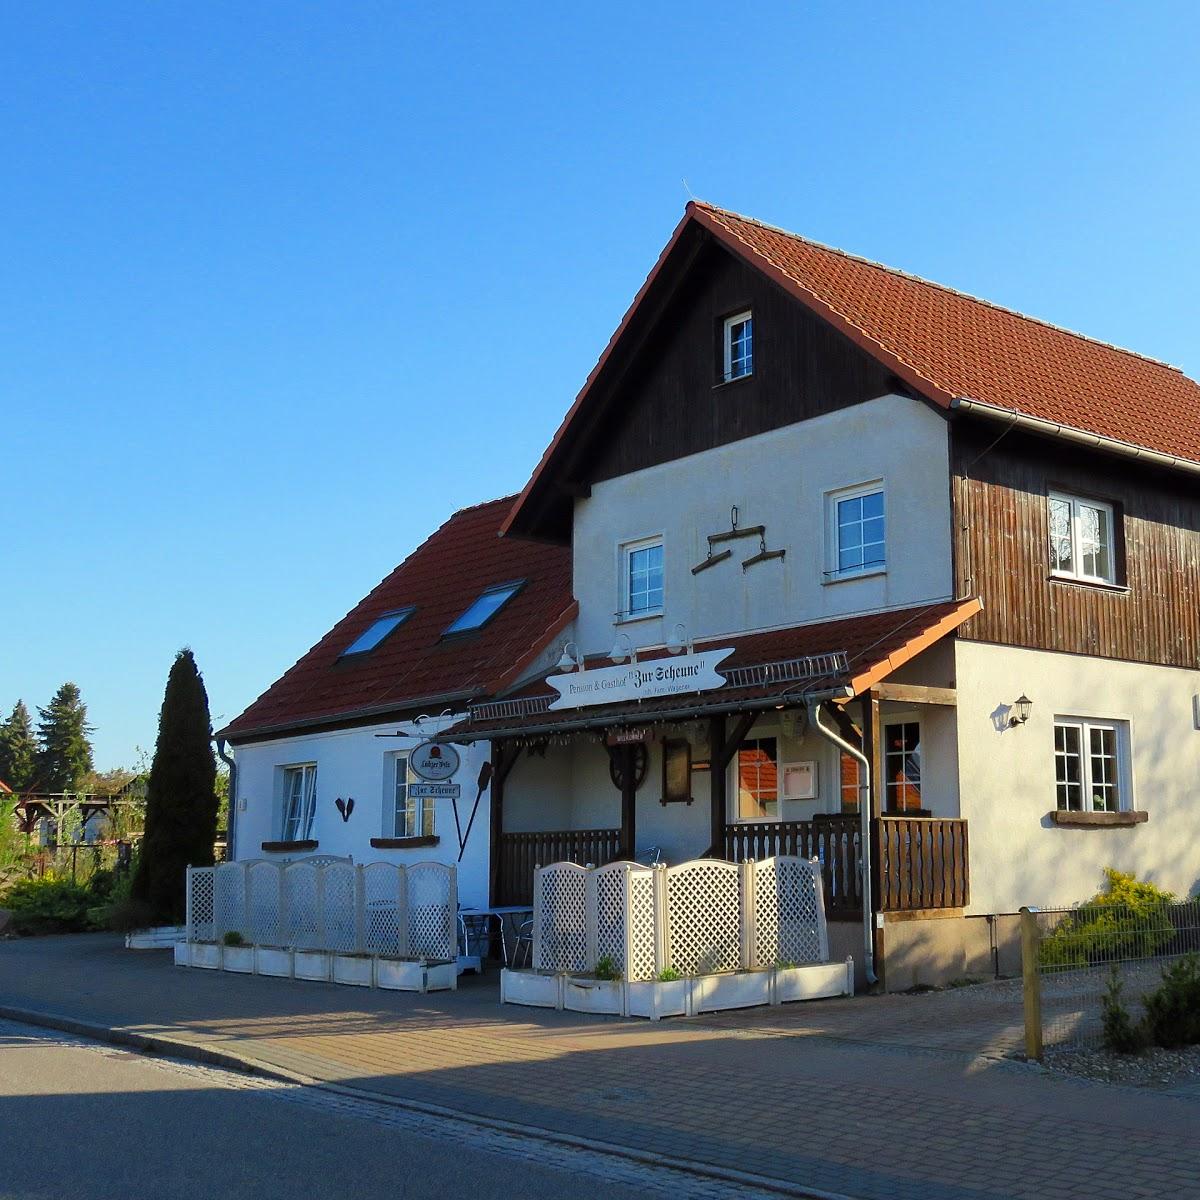 Restaurant "Esther Wagener Pension und Gasthof Zur Scheune" in  Rheinsberg